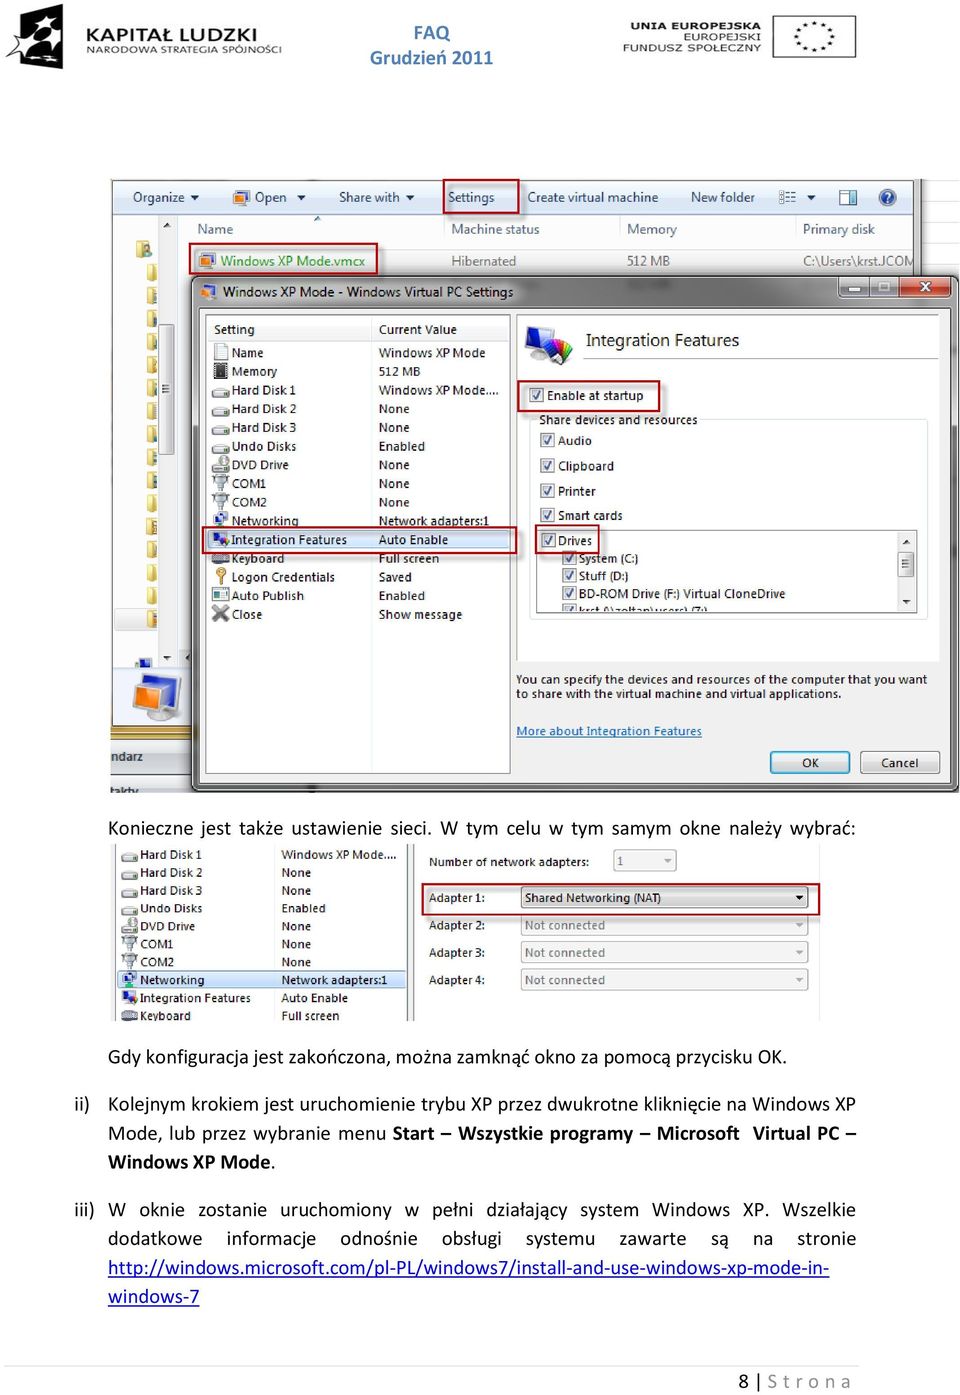 ii) Kolejnym krokiem jest uruchomienie trybu XP przez dwukrotne kliknięcie na Windows XP Mode, lub przez wybranie menu Start Wszystkie programy